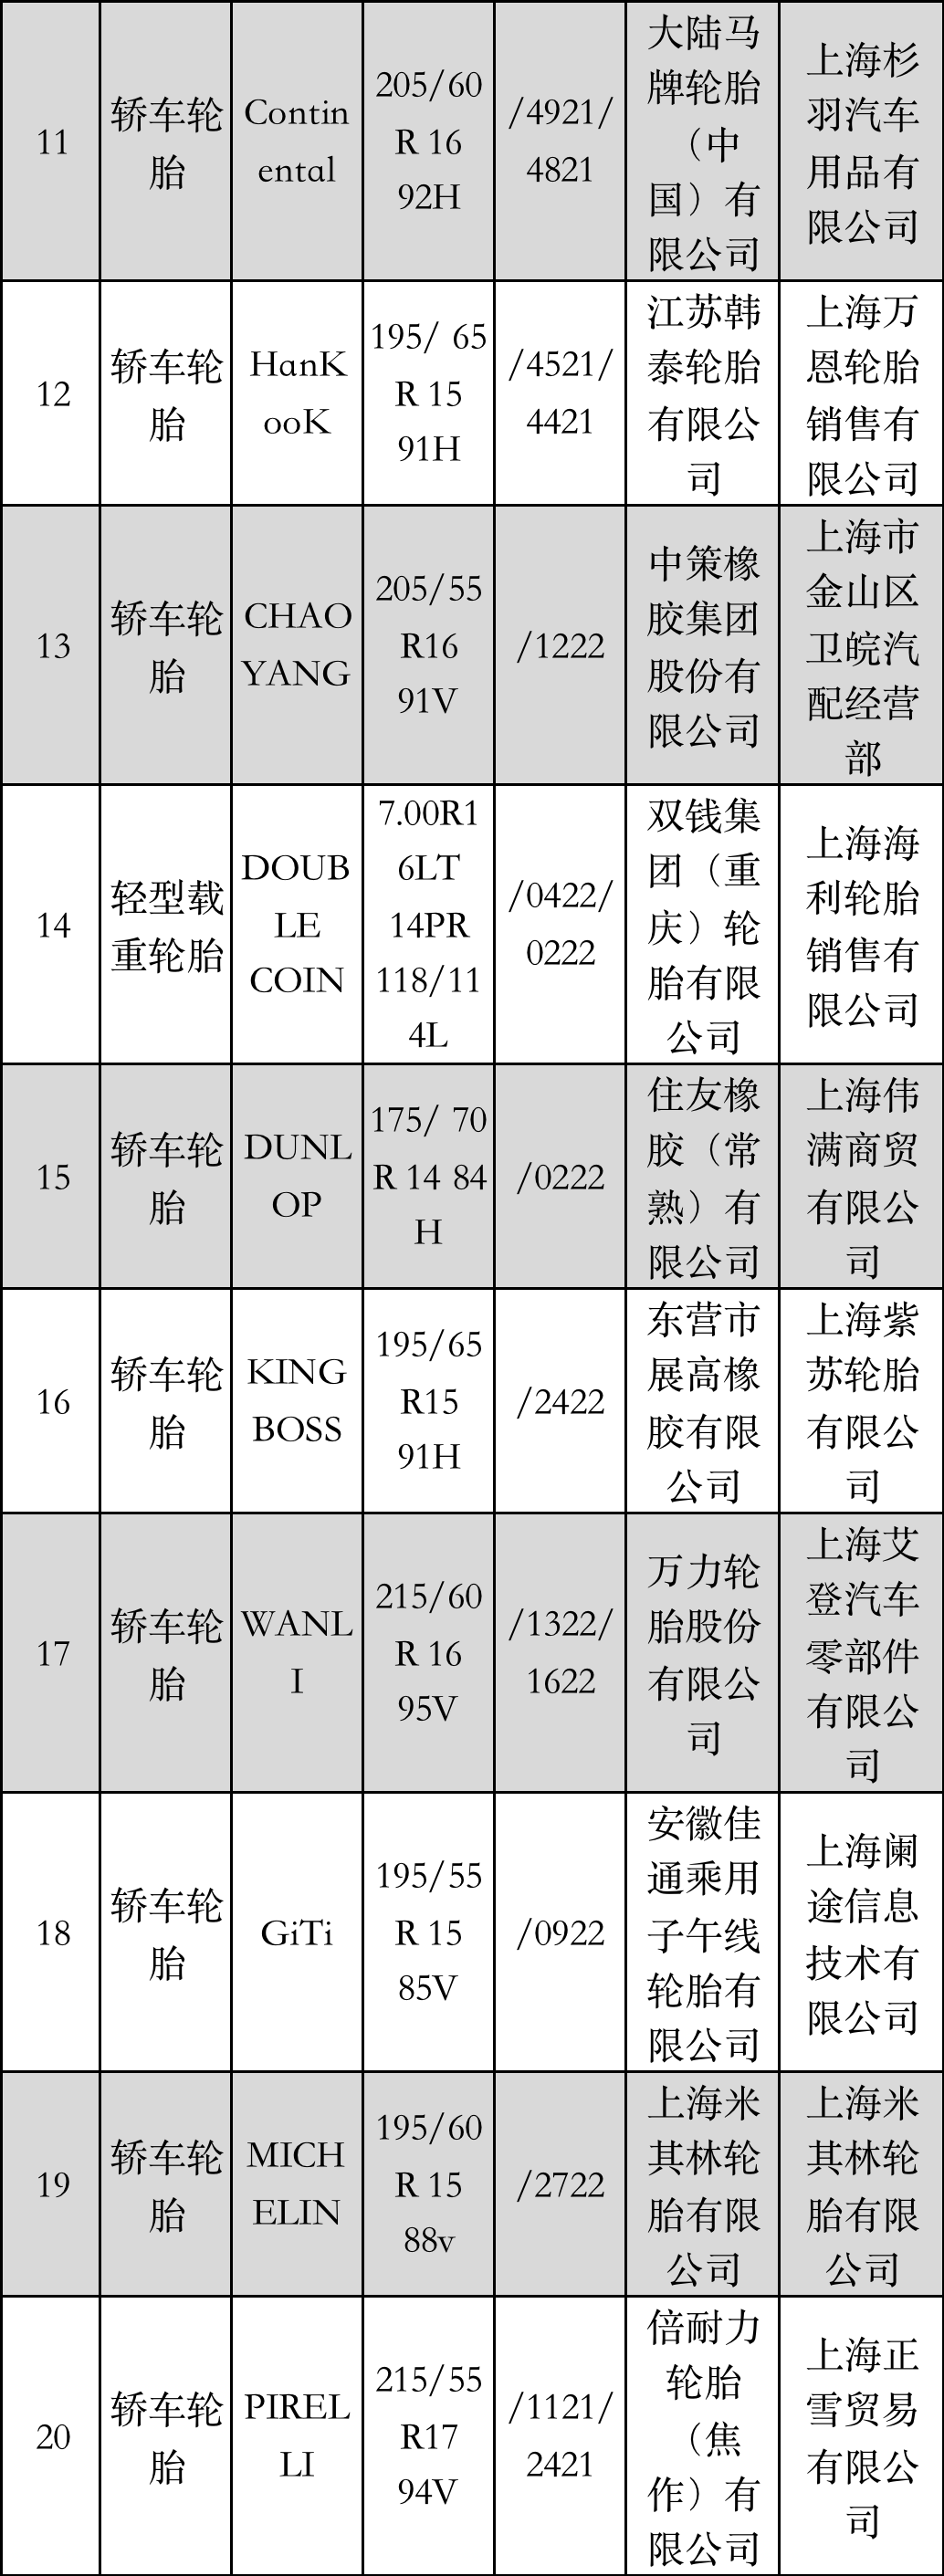 上海市产品质量监督抽查结果发布，涉及17家轮胎厂